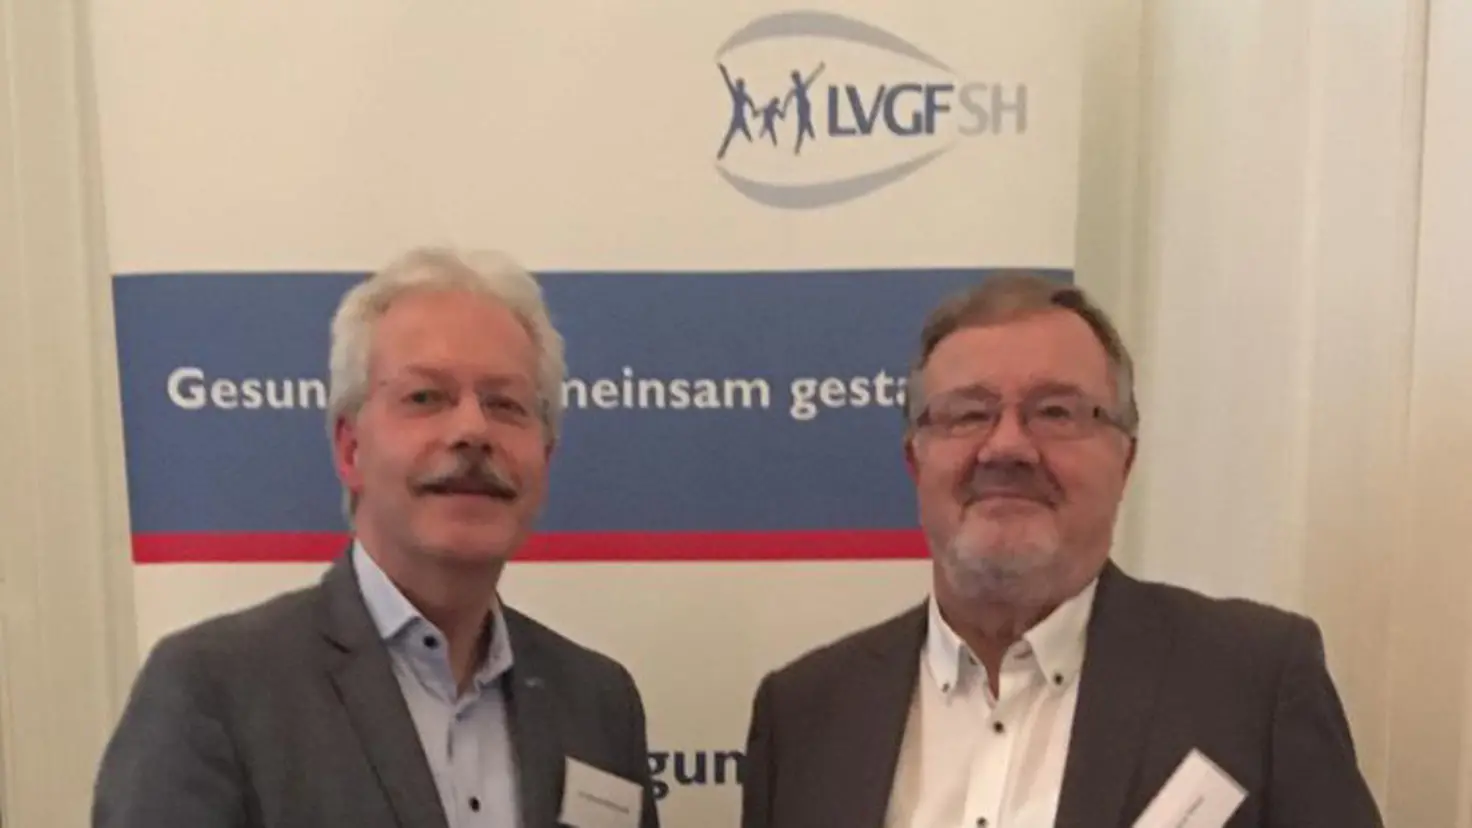 Dr. Bernd Hillebrandt und Dietmar Katzer stehend vor einem Display der LVGF-SH